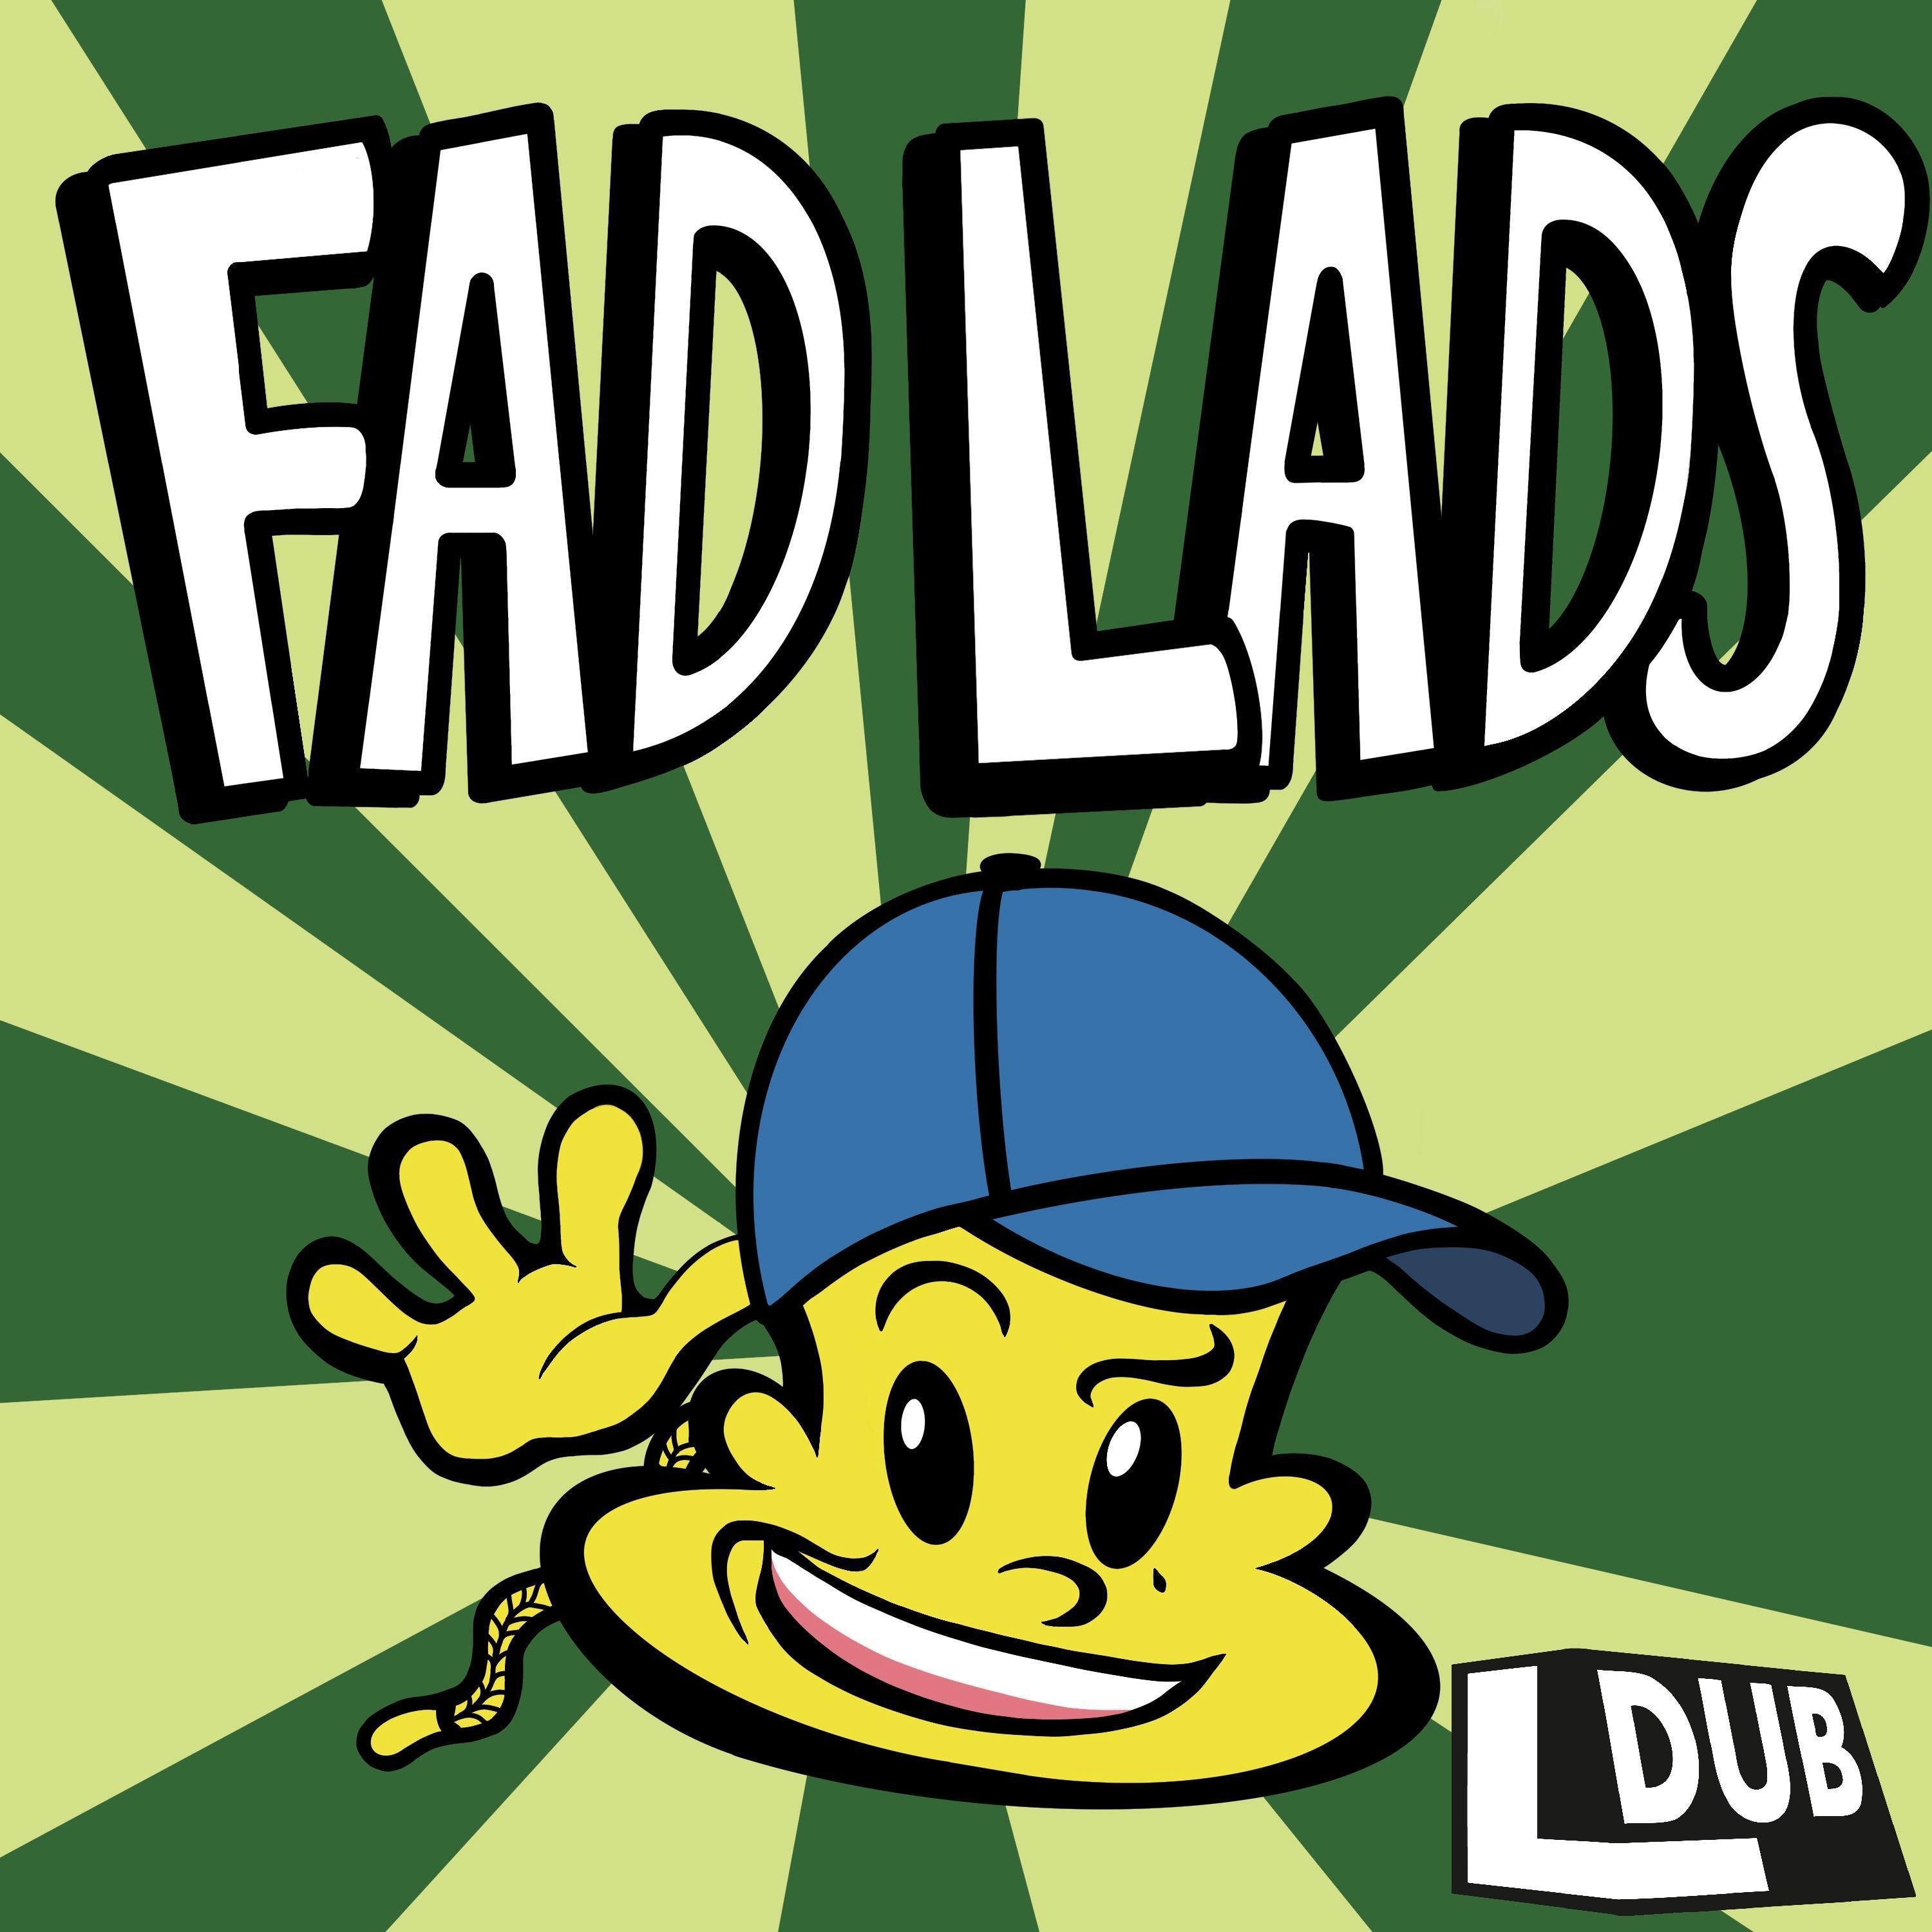 LDUB - Fad lads